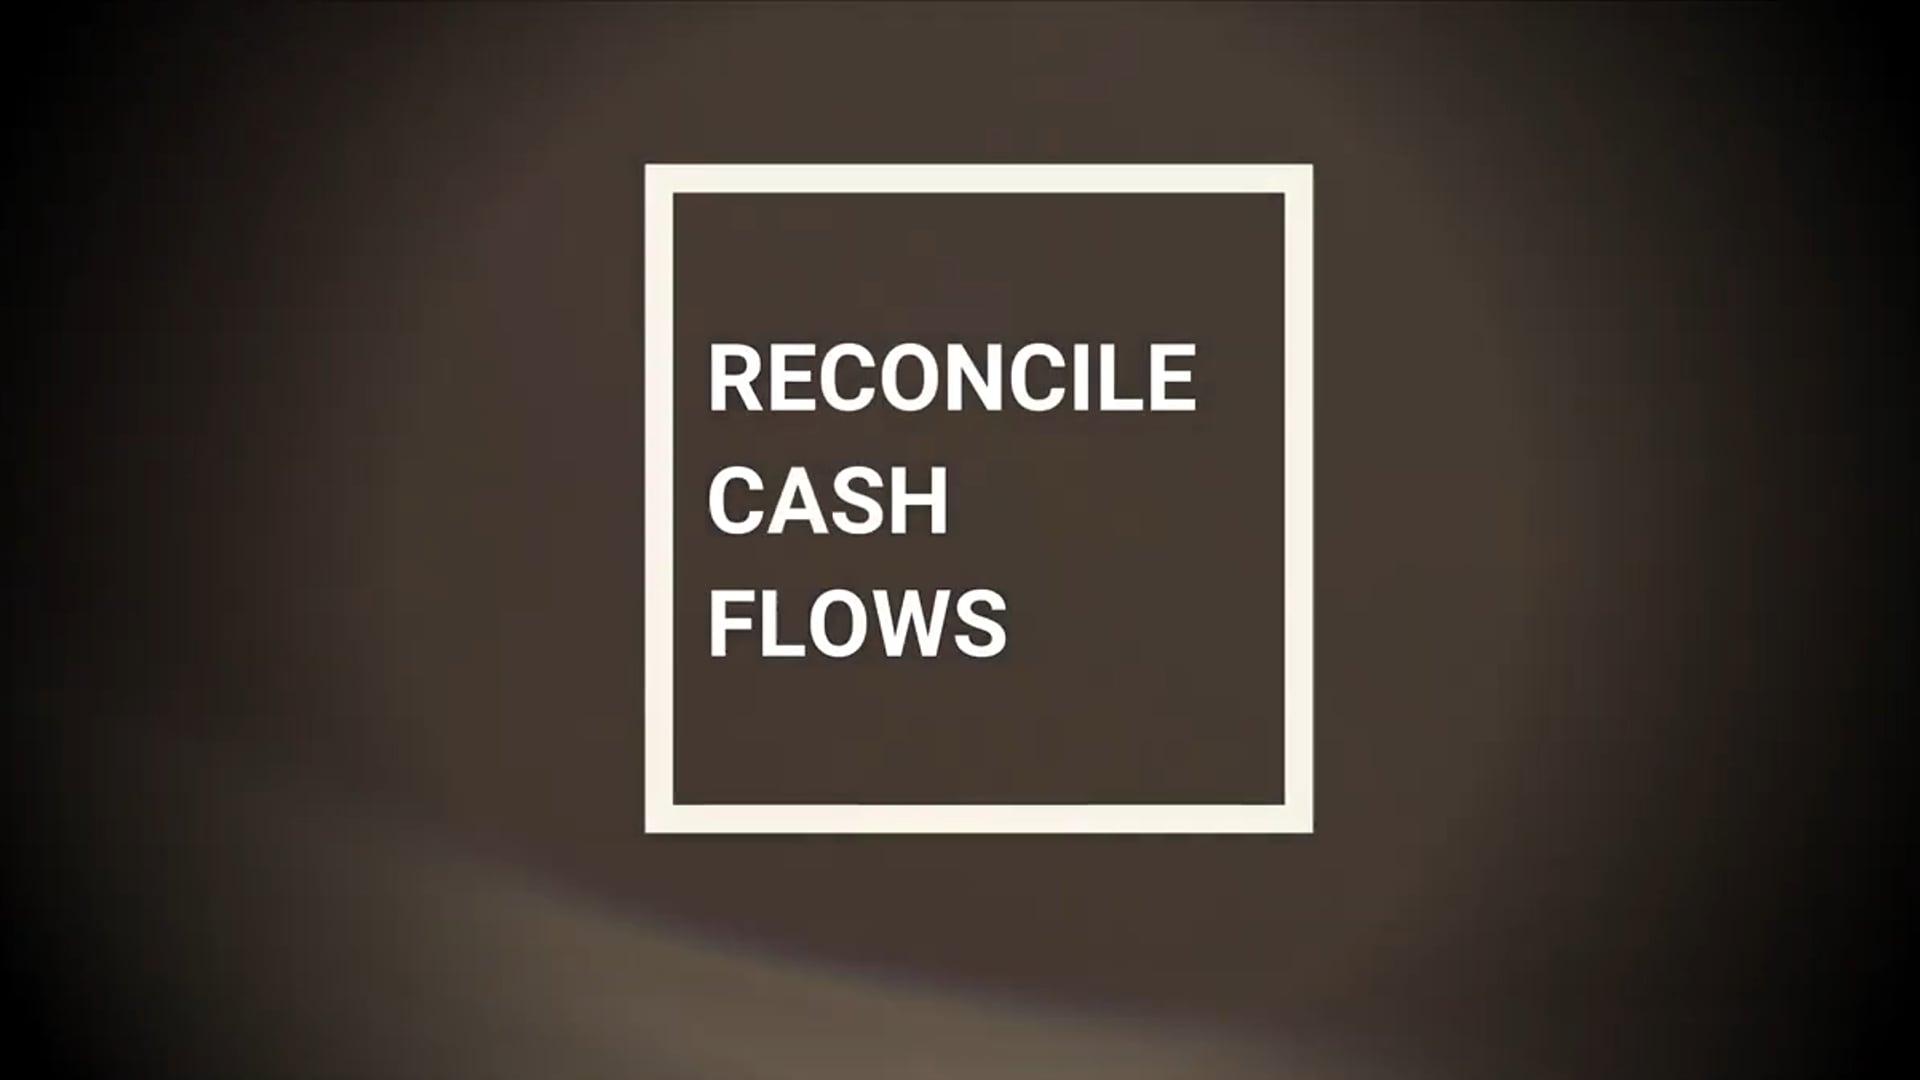 SAP Treasury - Reconcile Cash Flows